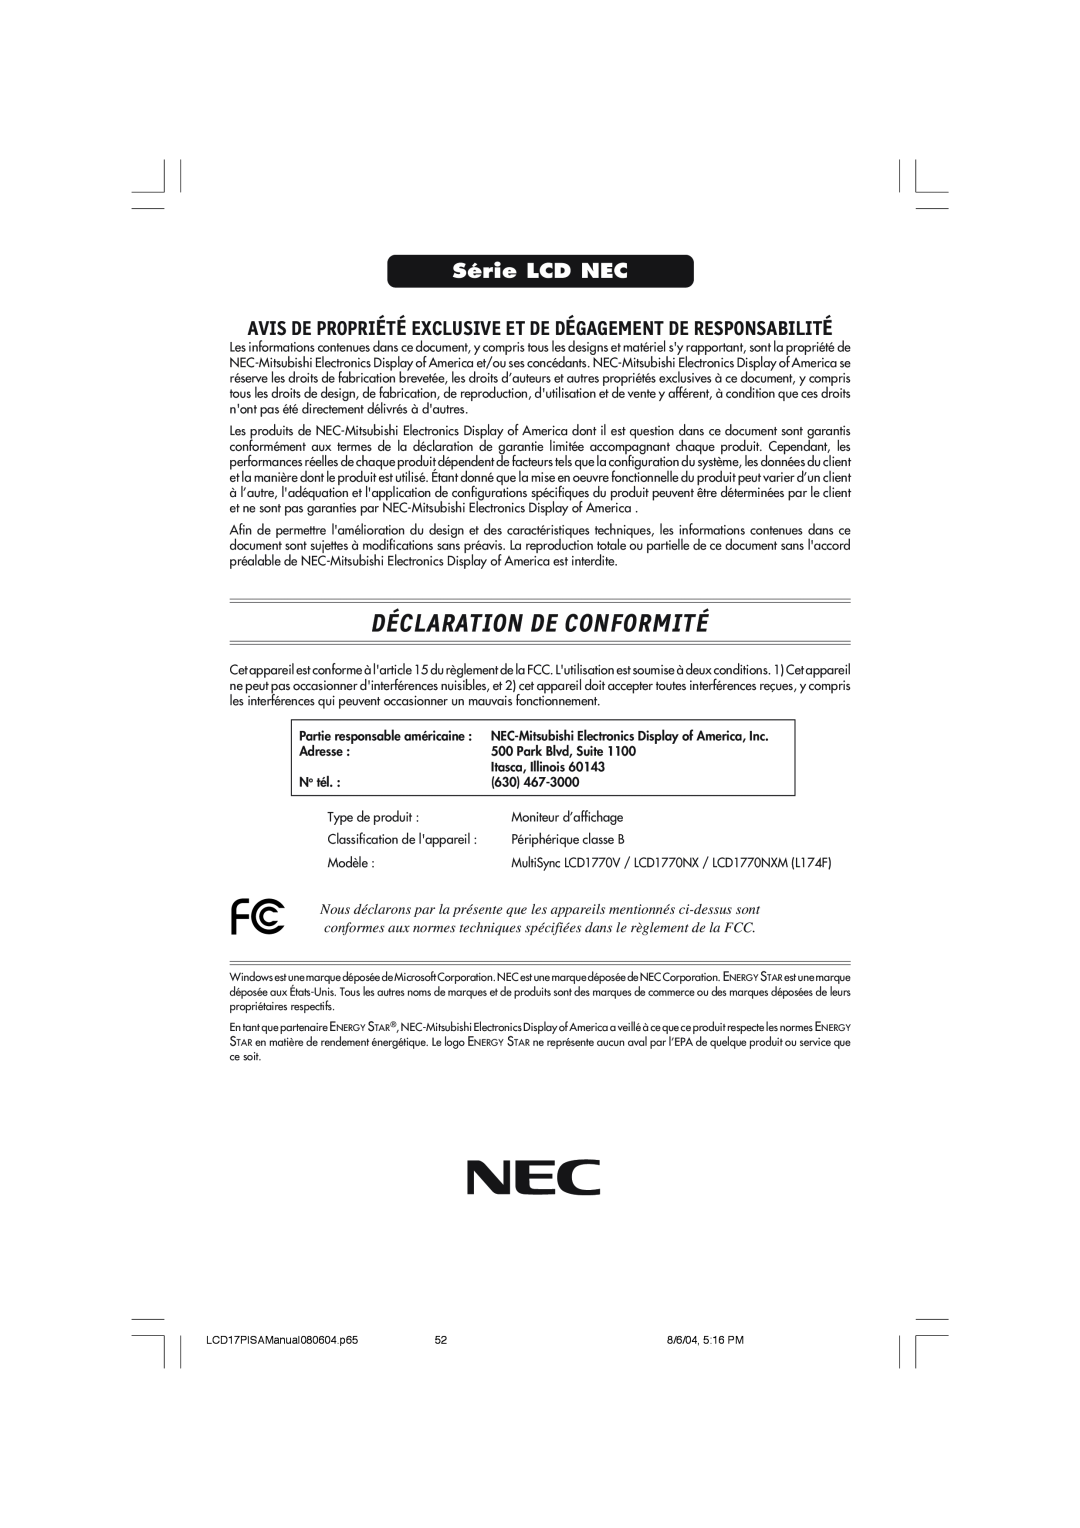 NEC LCD1770V Déclaration De Conformité, Série LCD NEC, Avis De Propriété Exclusive Et De Dégagement De Responsabilité 